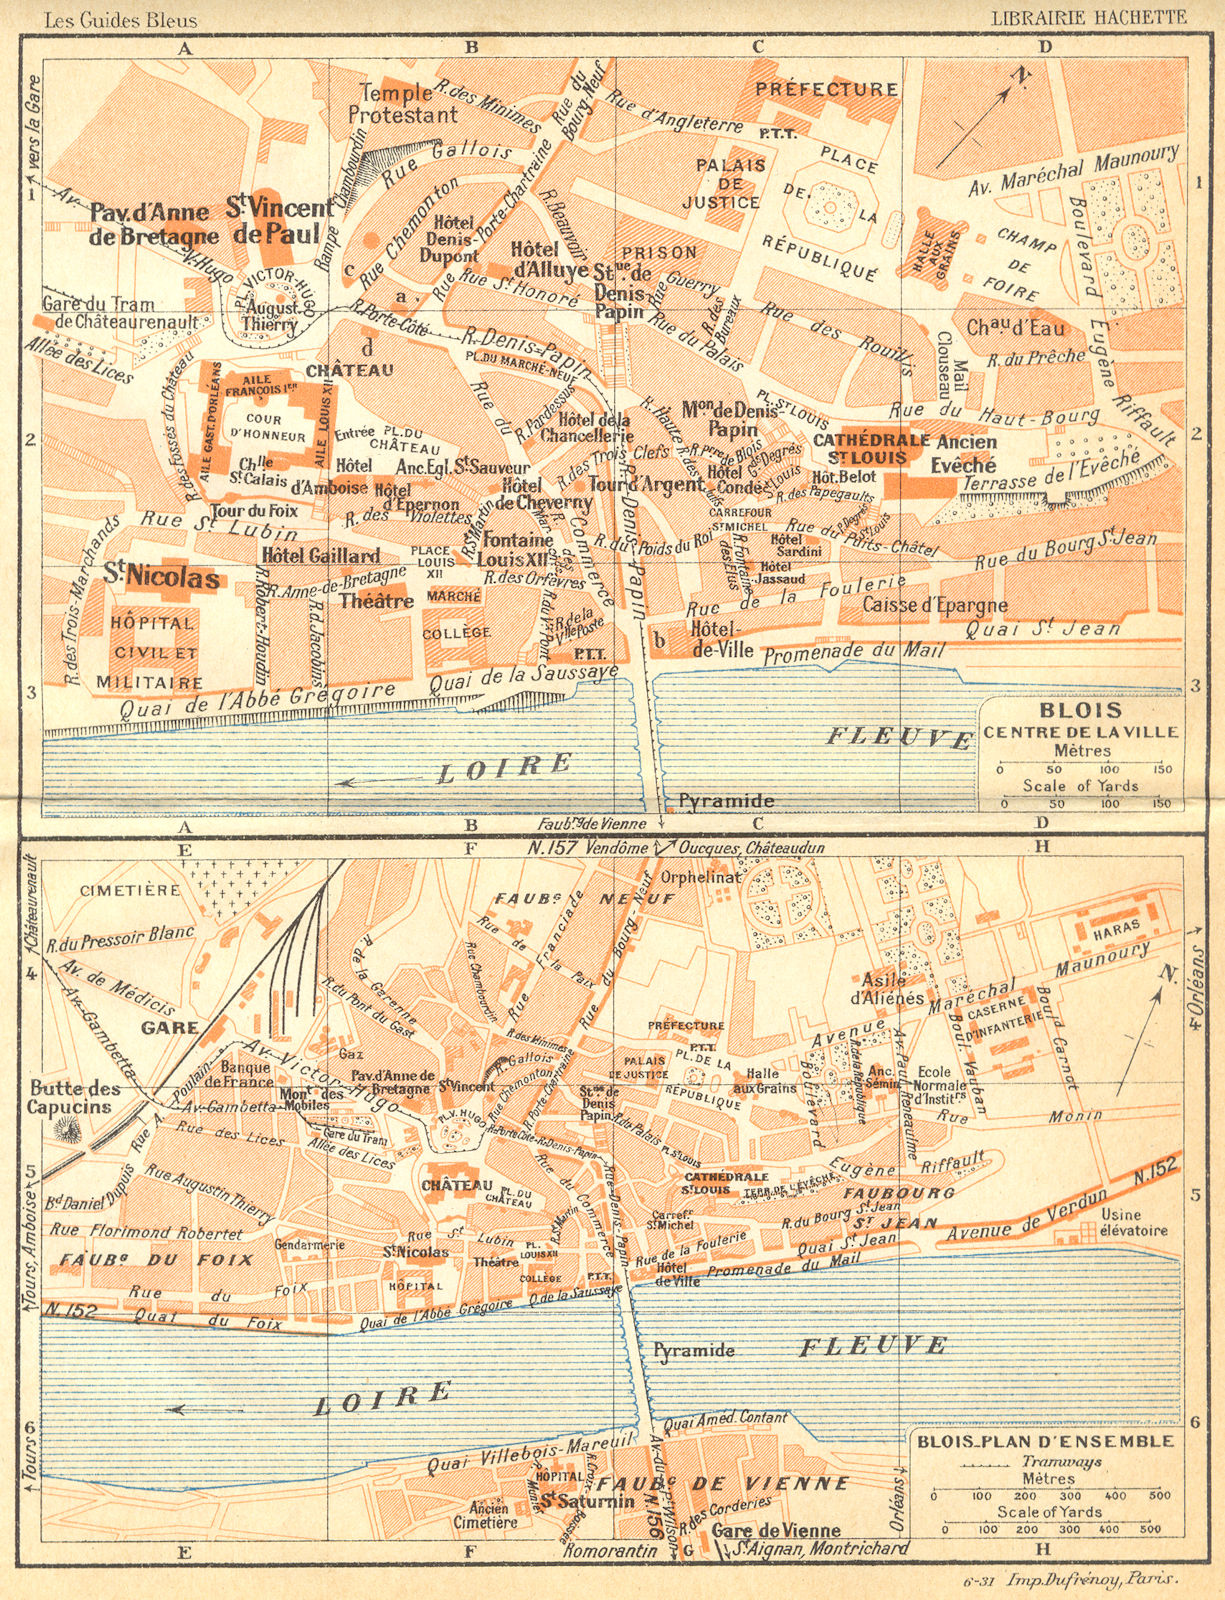 FRANCE. Blois Centre de Ville; -plan d'Ensemble 1932 old vintage map chart